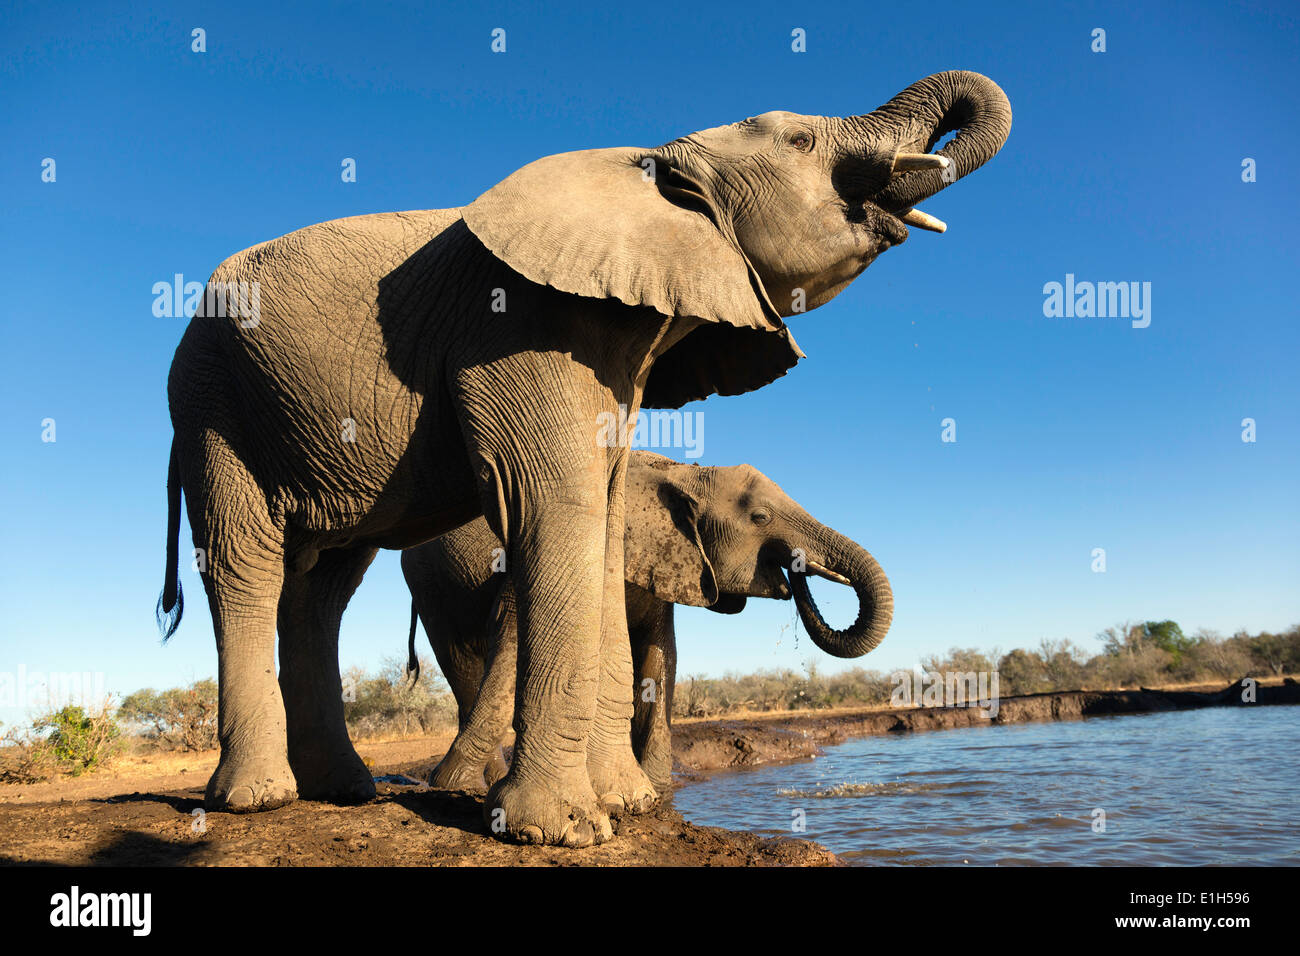 African elephants (Loxodonta africana) drinking at watering hole, Mashatu game reserve, Botswana, Africa Stock Photo